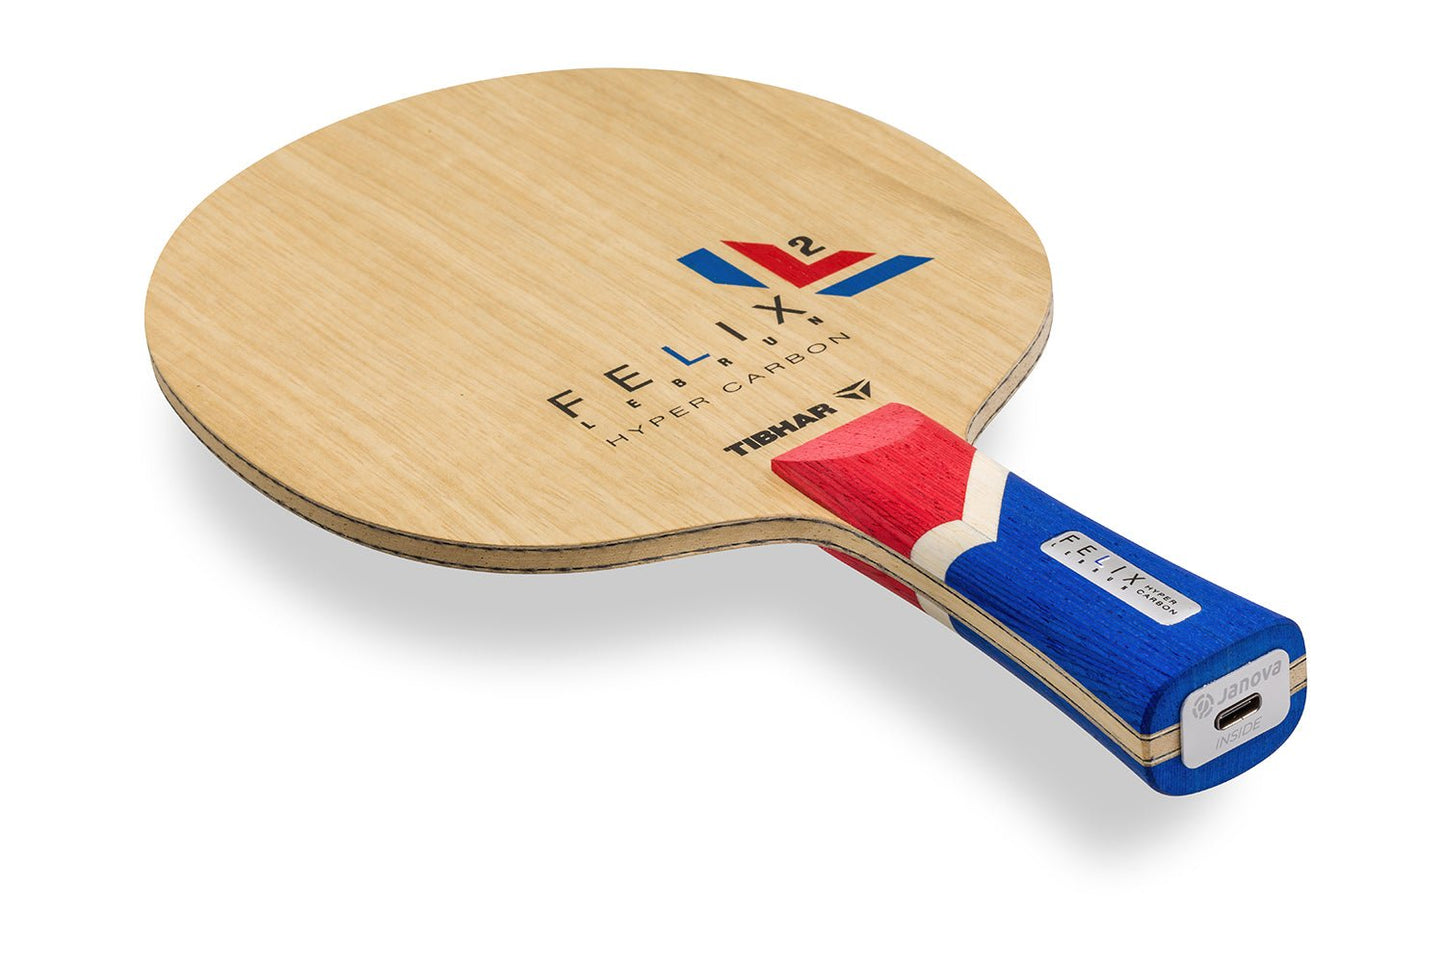 Tibhar Félix Lebrun Hyper Carbon Tischtennisschläger, konkaver Griff mit Janova Sensor und USB-C-Anschluss, vor weißem Hintergrund positioniert